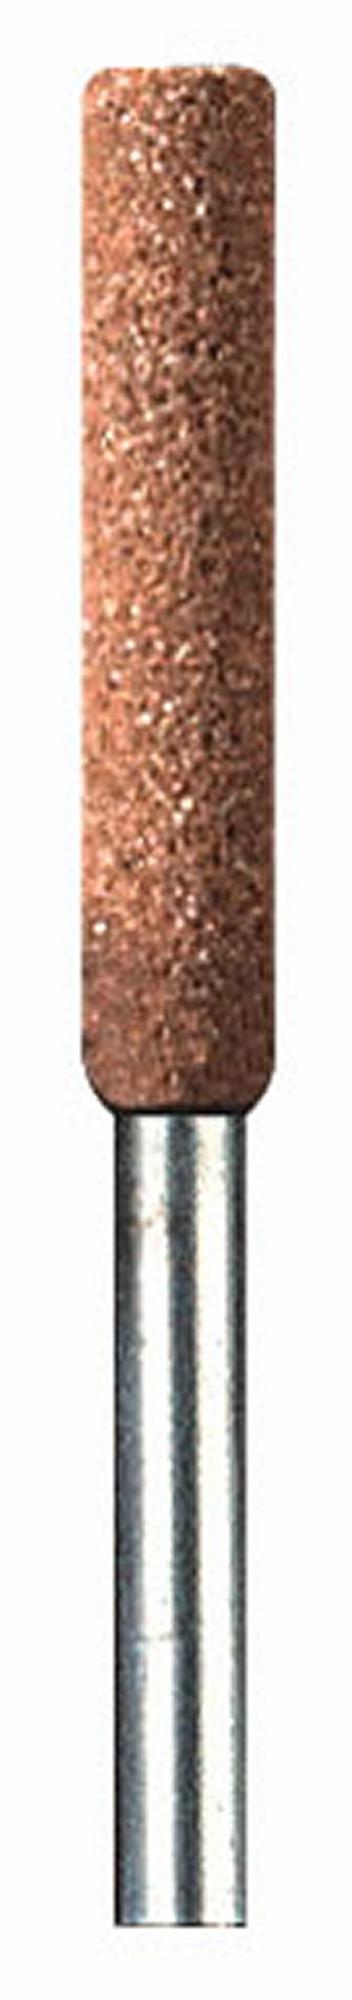 Meule à Rectifier Dremel en Oxyde d'Aluminium 15,9 mm - Garantie